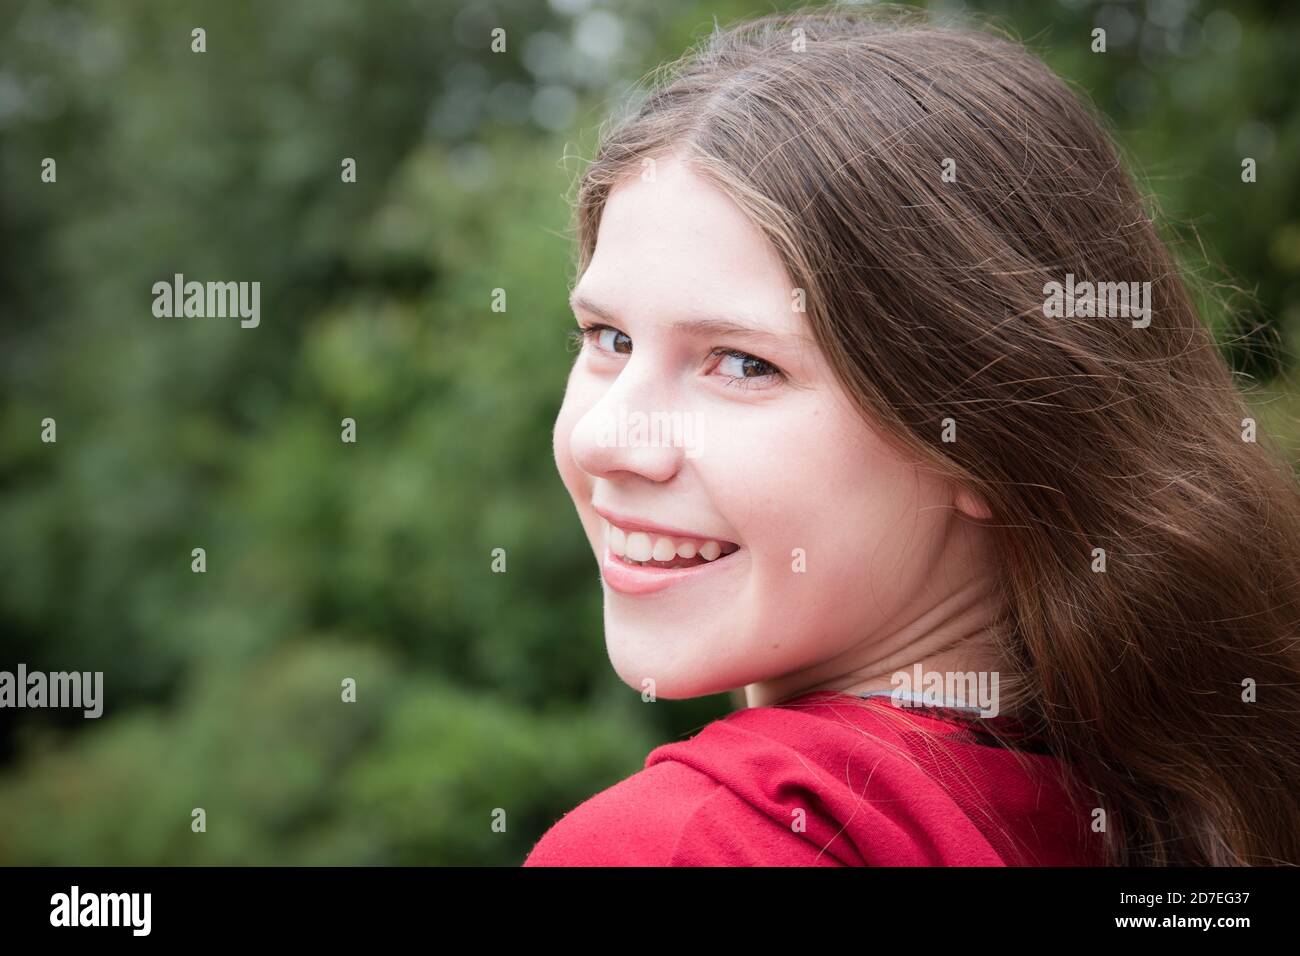 Schöne natürliche Porträt des Teenagers mit langen braunen Haaren Blick zurück auf die Kamera mit einem Lächeln, das Zähne zeigt Stockfoto